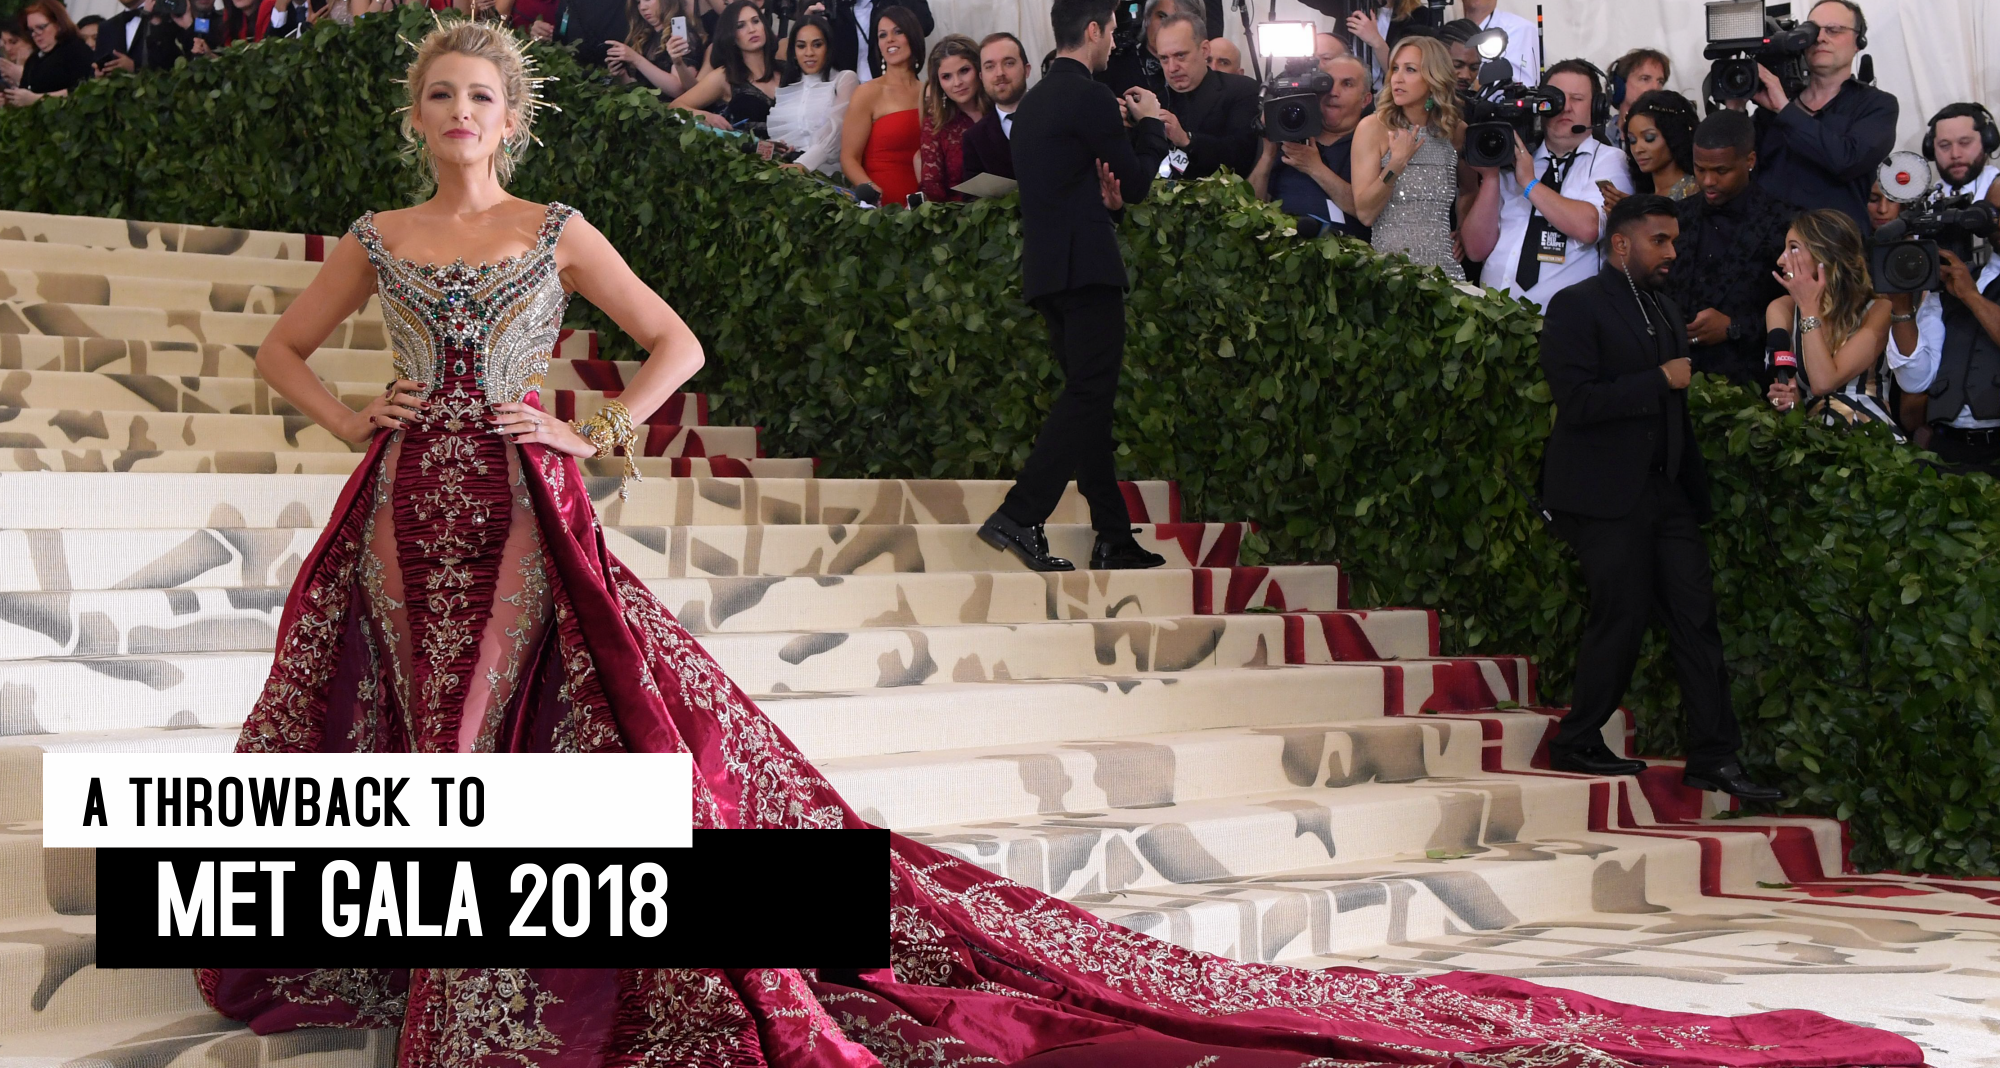 Blake Lively Versace Gown At 2018 Met Gala - Blake Lively Met Gala Dress  2018